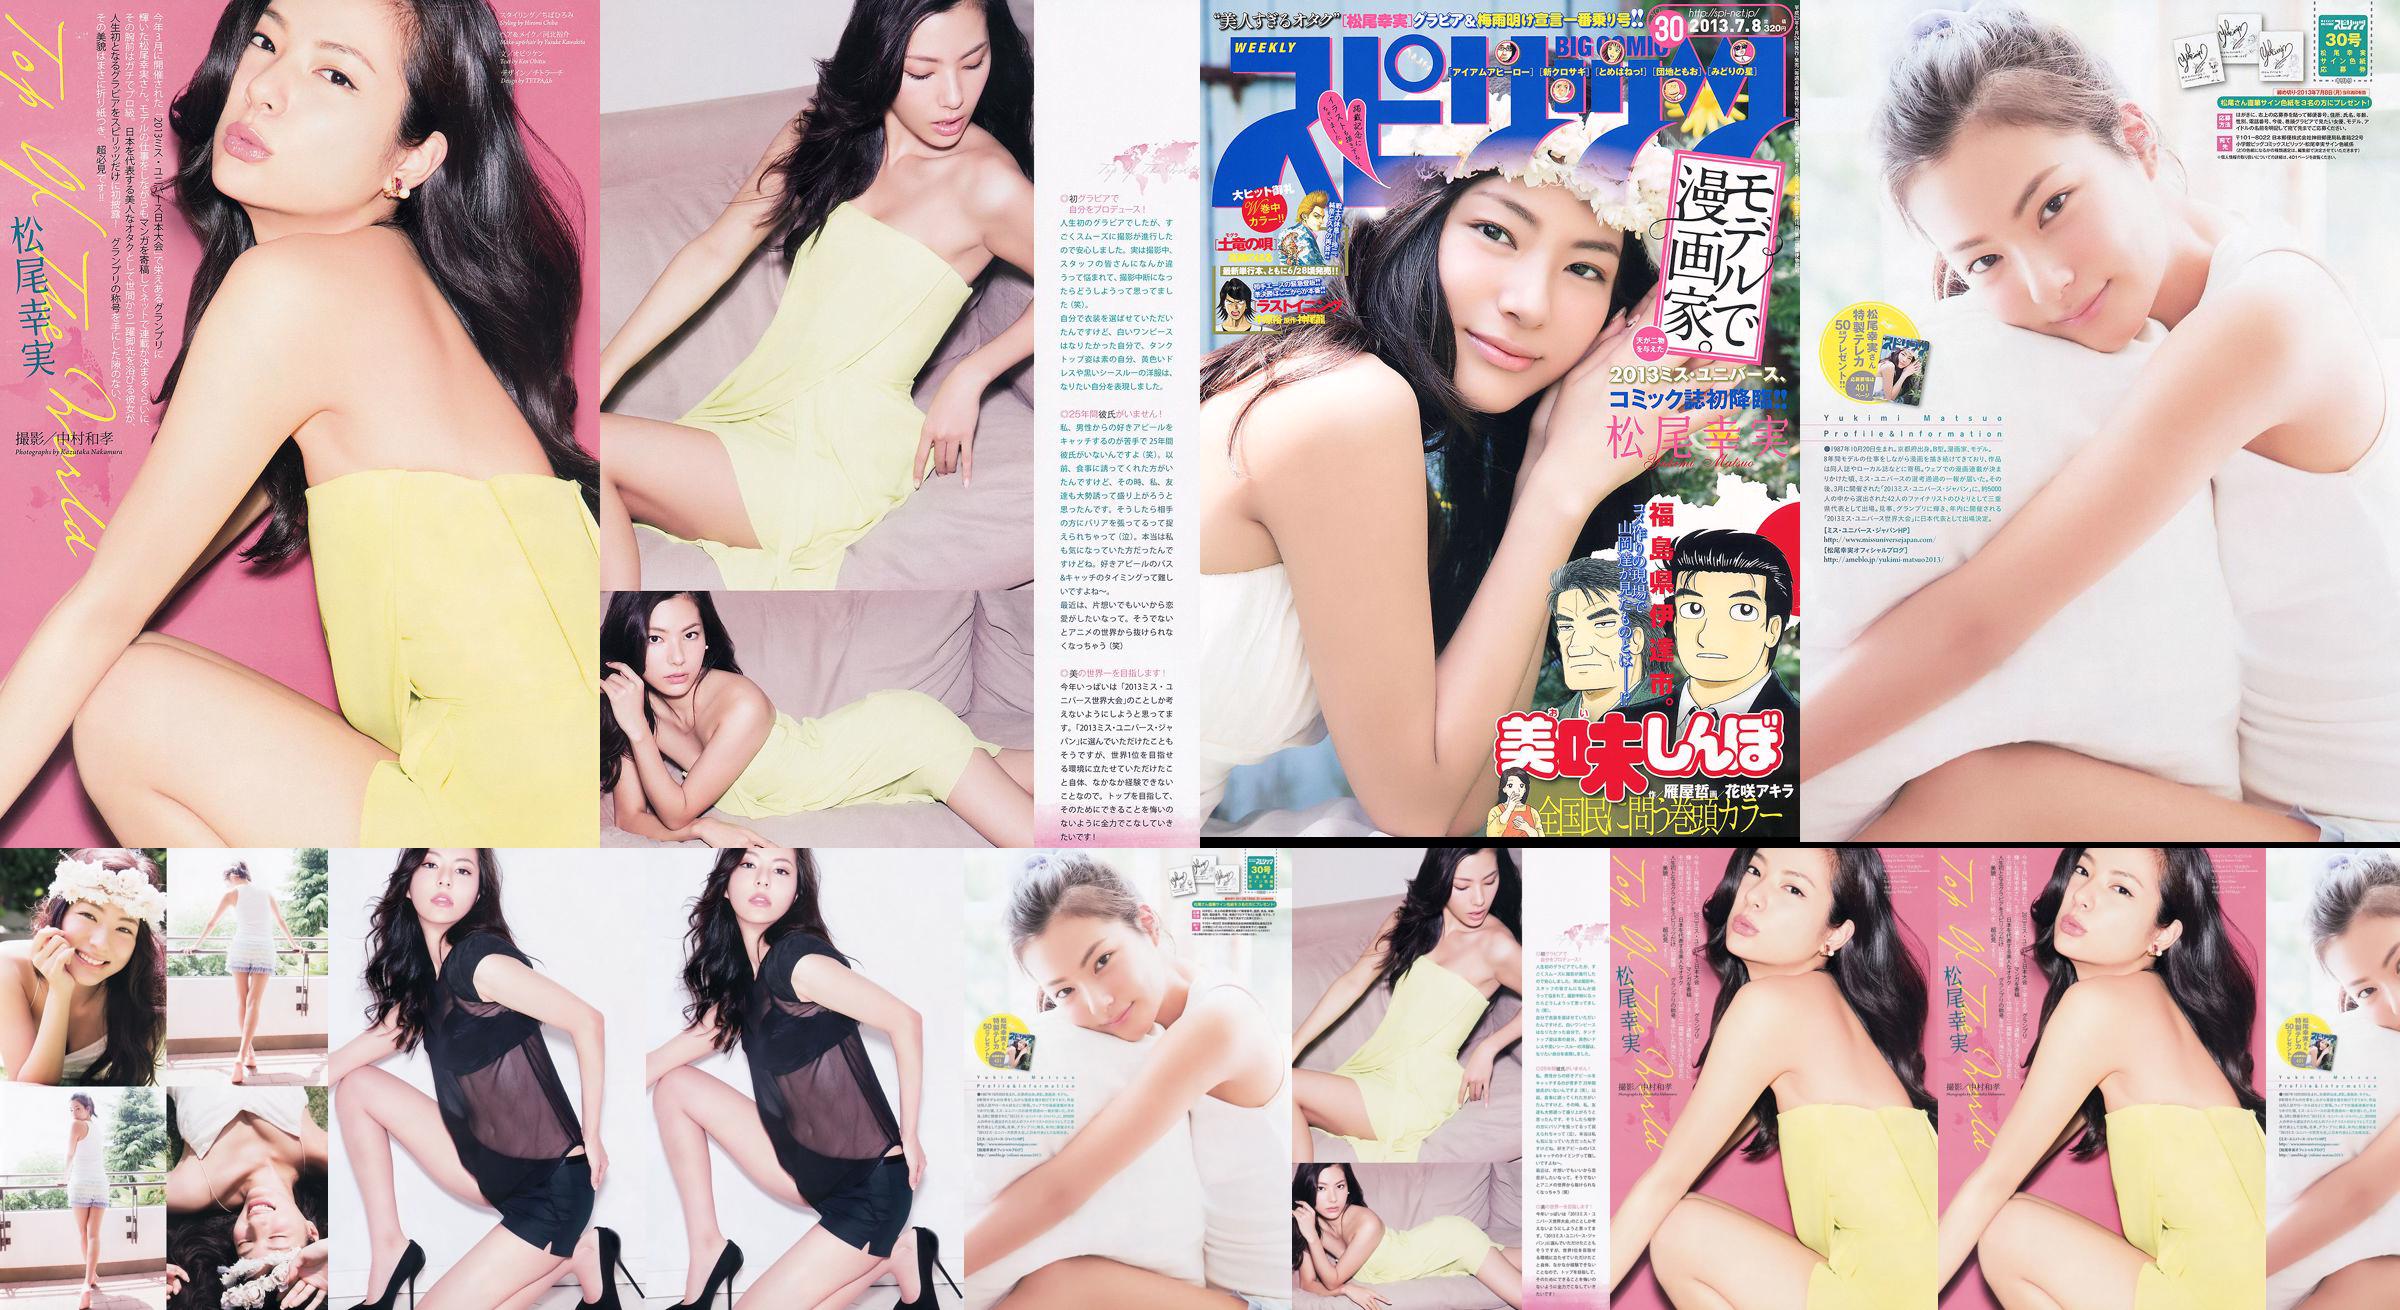 [Weekly Big Comic Spirits] Komi Matsuo 2013 No.30 Photo Magazine No.f039c2 Pagina 2